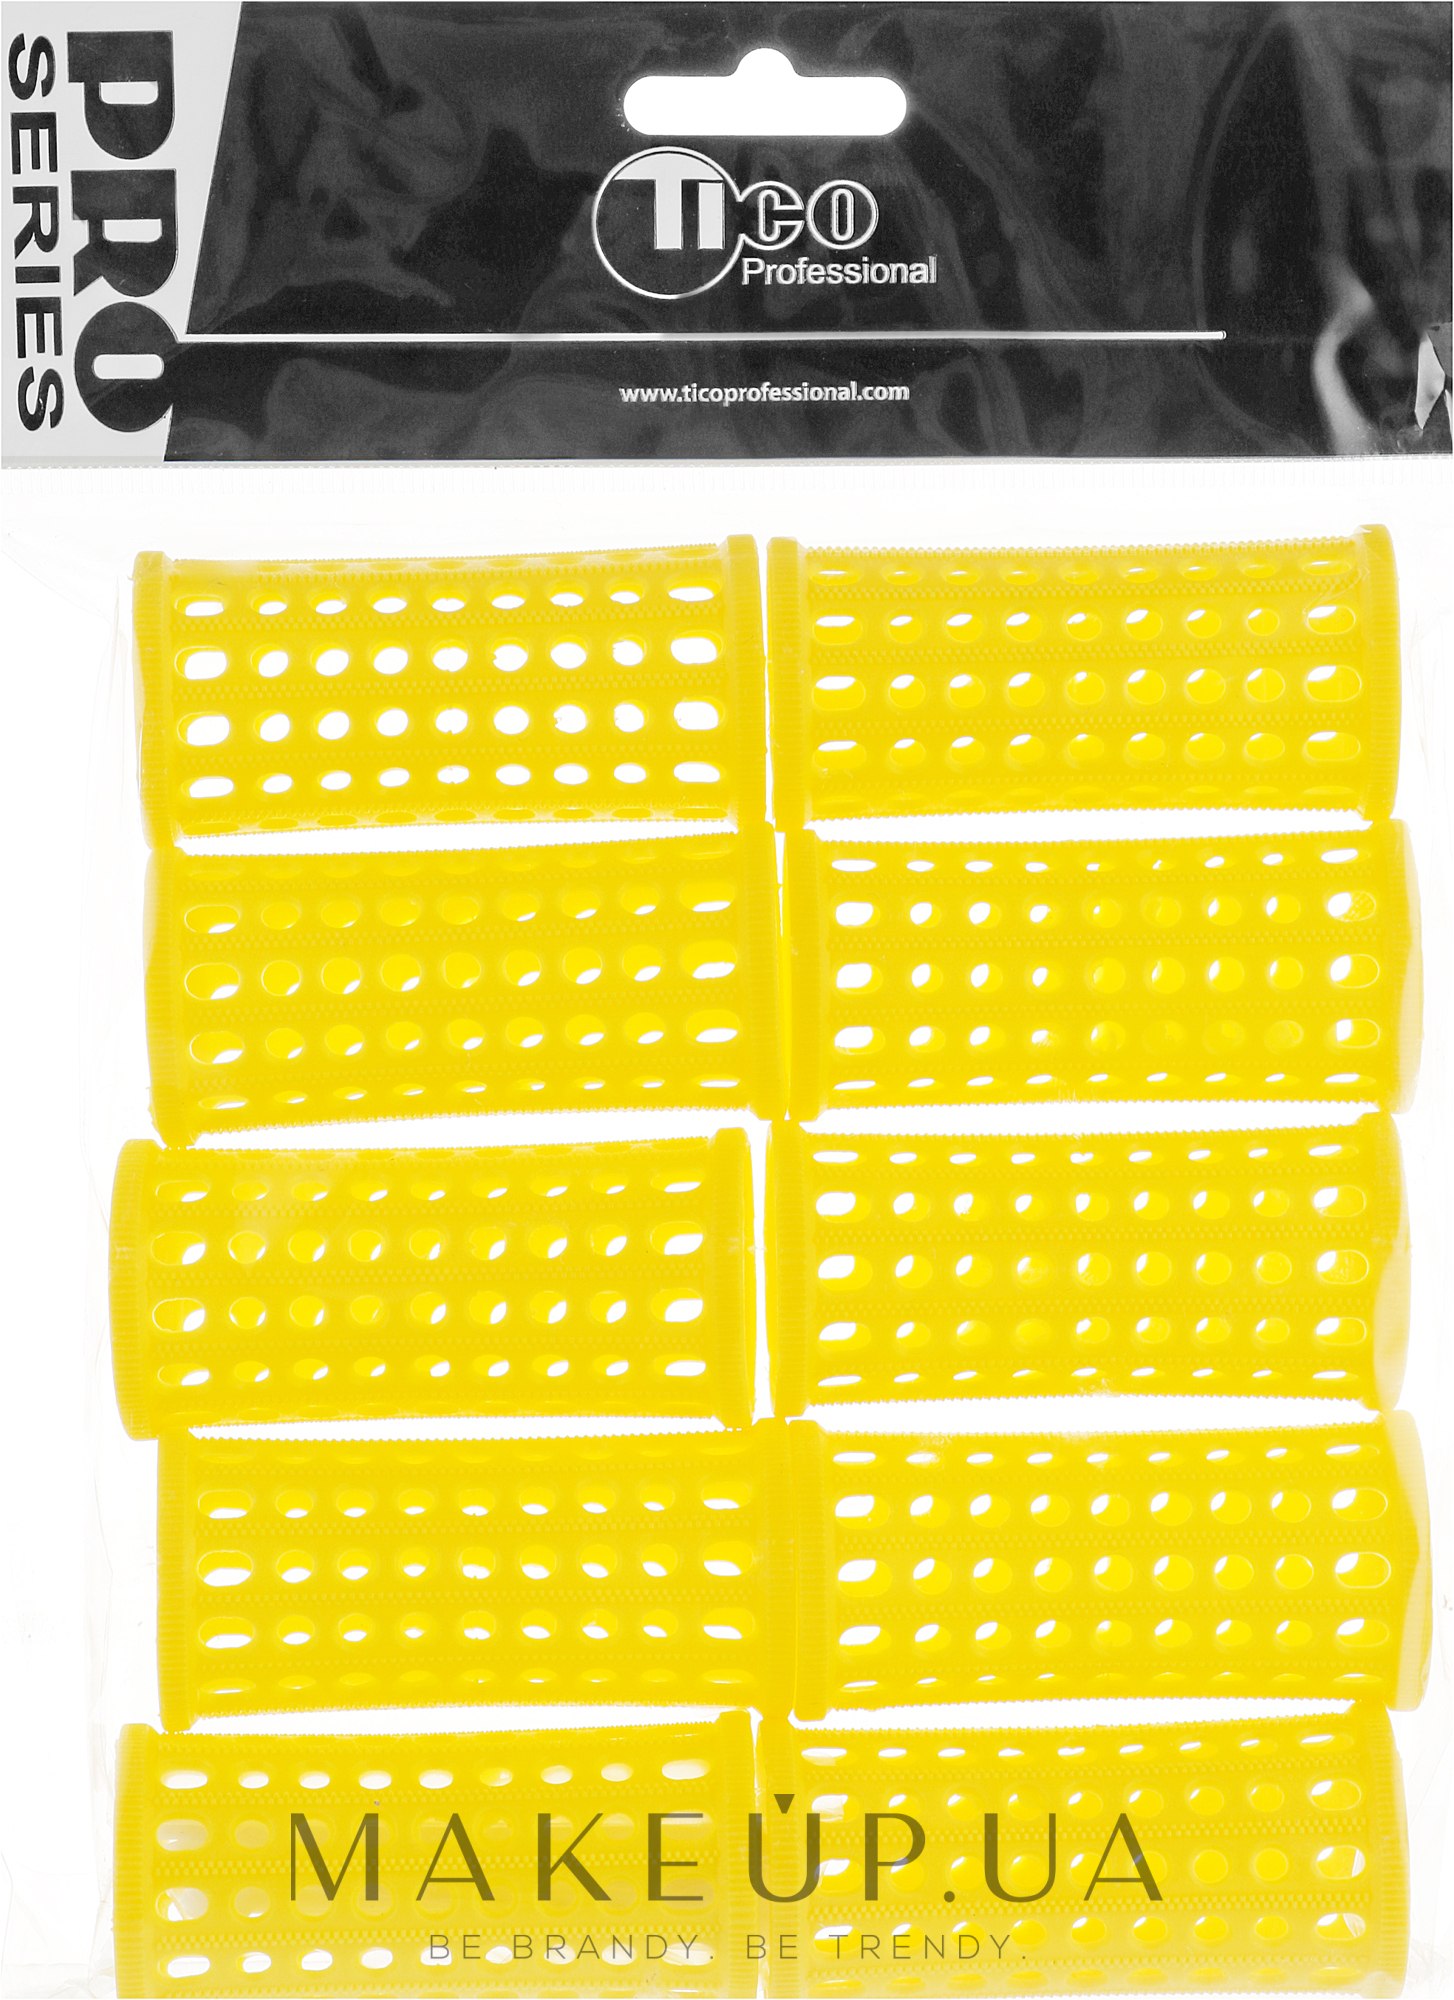 Бігуді пластикові, d30 мм, жовті - Tico Professional — фото 10шт